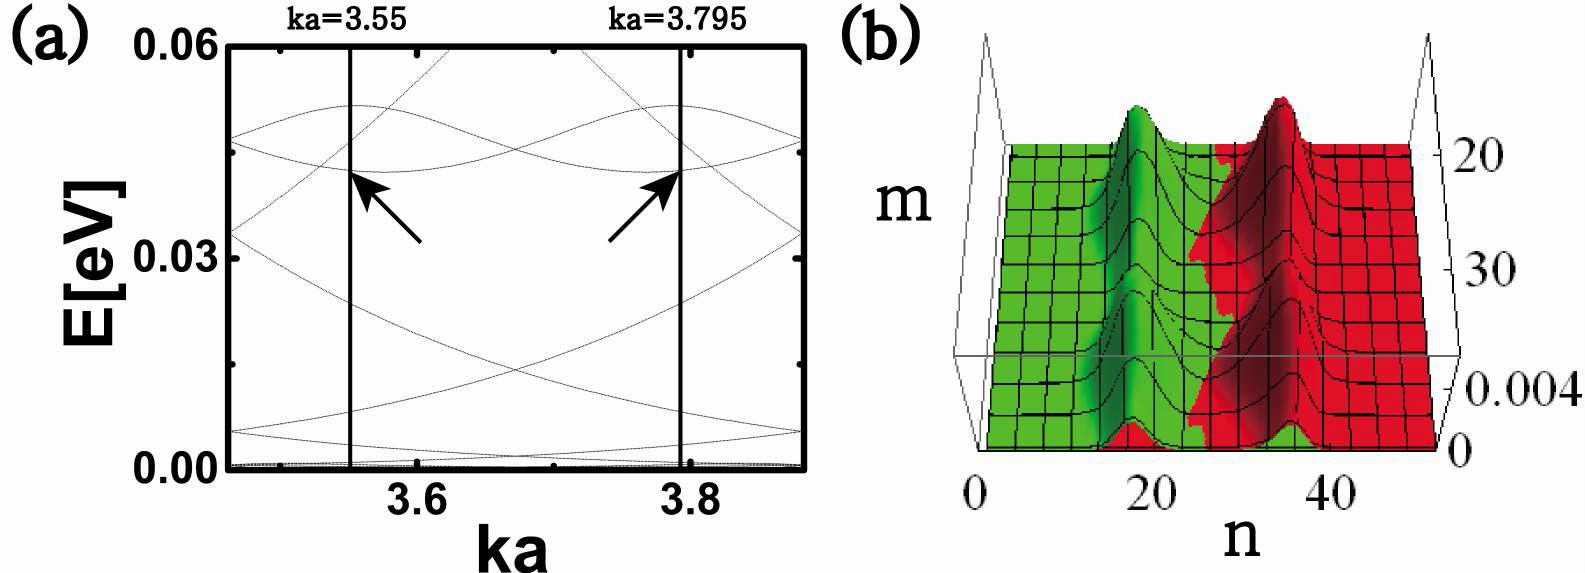 (a) 지그재그 나노리본에서의 밴드 구조를 나타낸 그림. 파라미터는 R/ℓ=1.47, V=1eV를 사용하였다. (b) 서 있는 파동의 확률밀도는 ka=3.55(?간색)과 ka=3.795(녹색)에서 축퇴된 에너지 상태들에 의해 만들어진다. 그림에서는 무한히 긴 나노리본의 일부분만 나타낸 것이다.